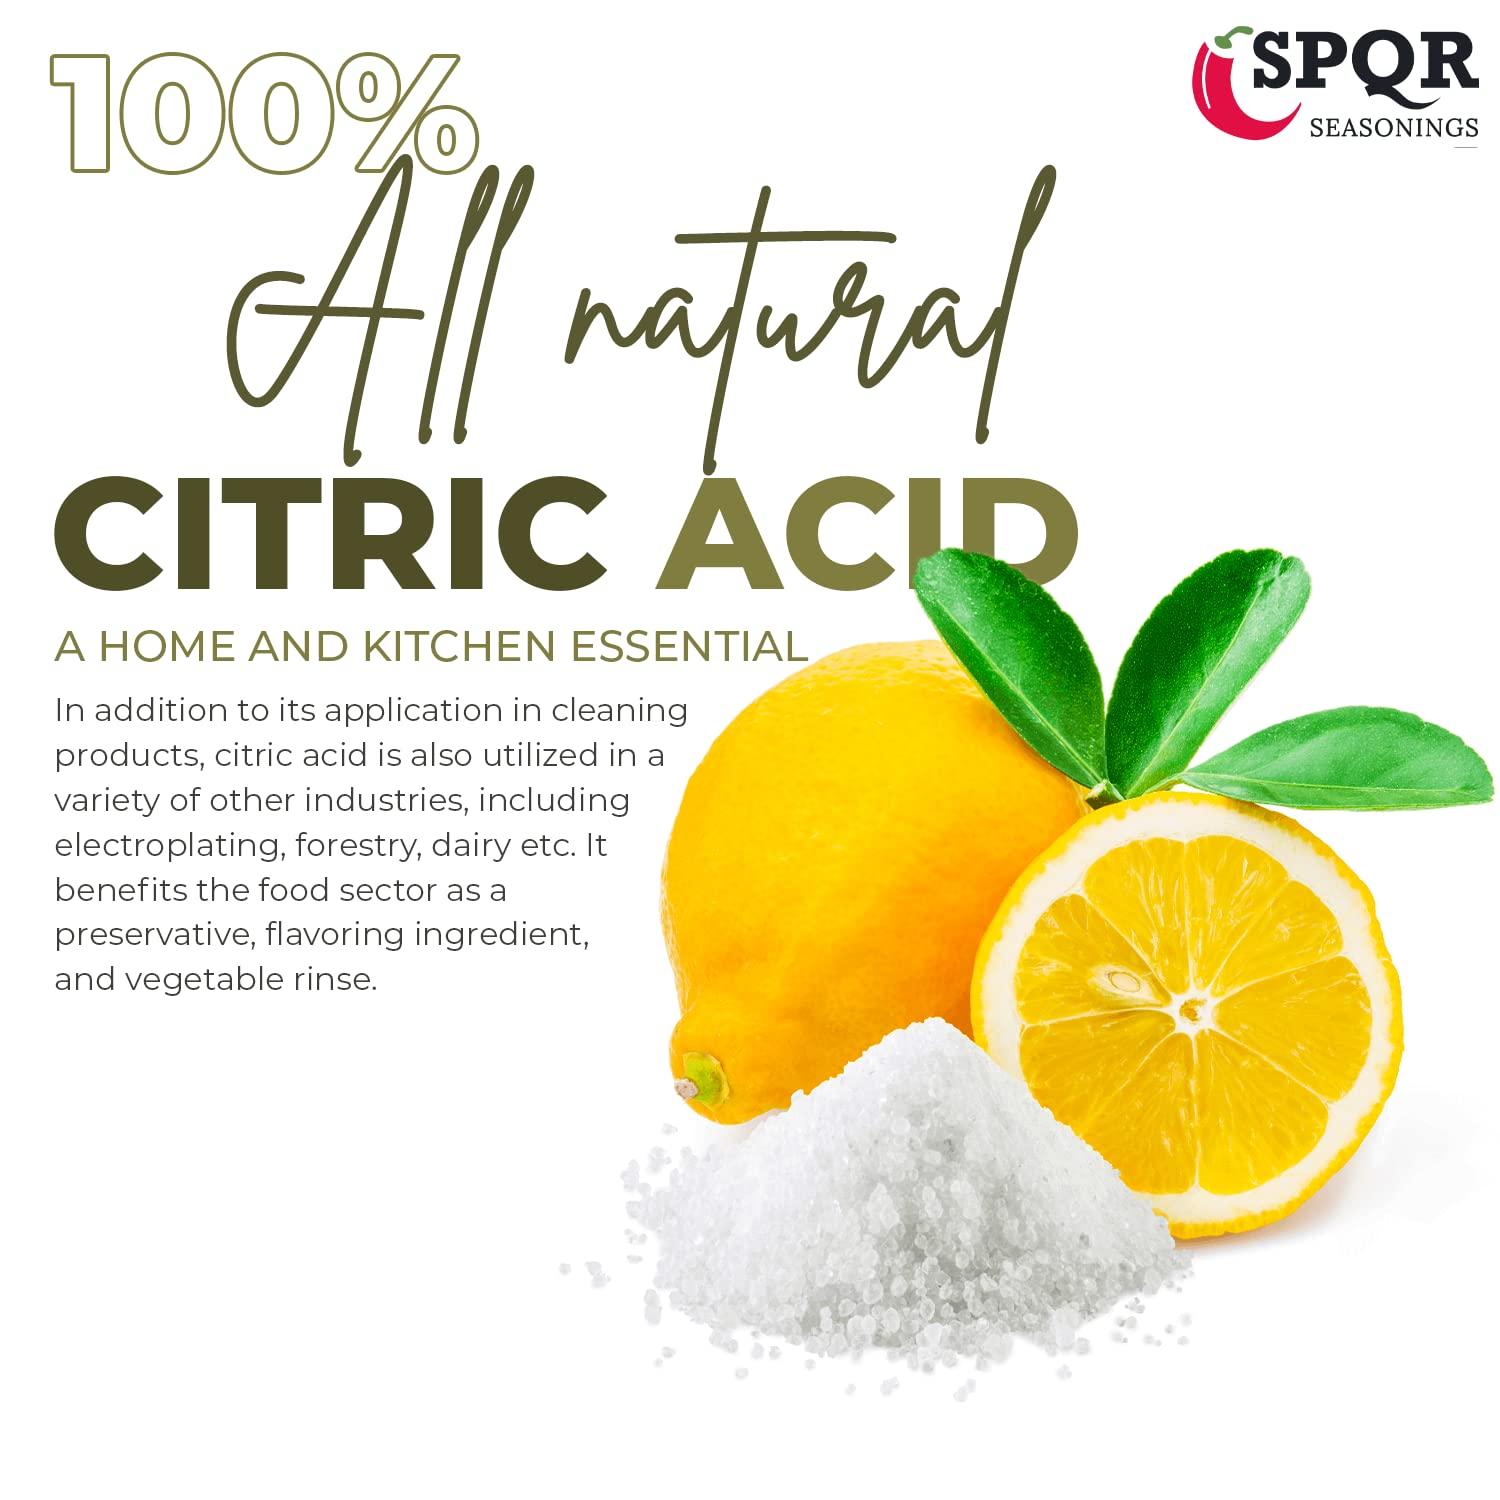 SPQR Seasonings Citric Acid 1 Pound Bottle Food-Grade Flavor Enhancer,  Household Cleaner & Natural Preservative for Cooking, Baking, Bath Bombs